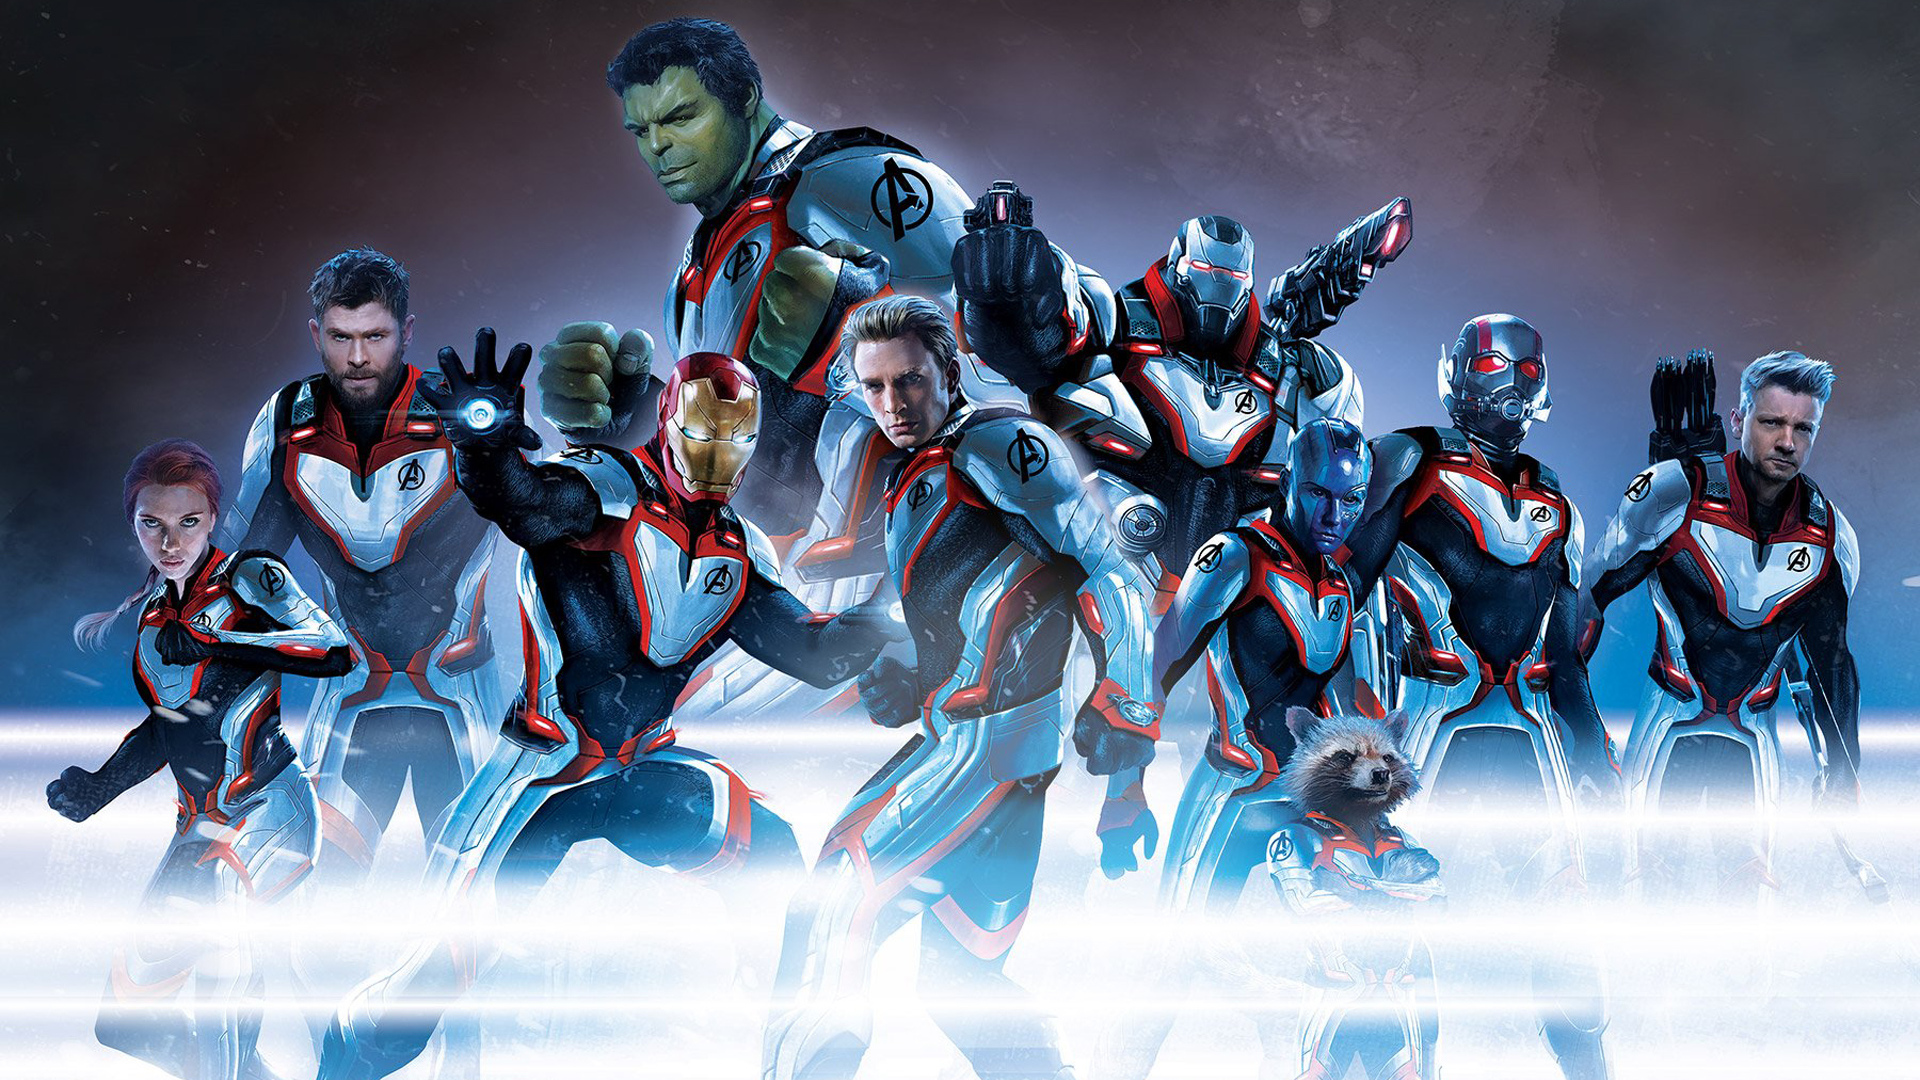 Quantum Realm Suit Avengers Endgame 2019 Le - Avengers Endgame Quantum Suits , HD Wallpaper & Backgrounds